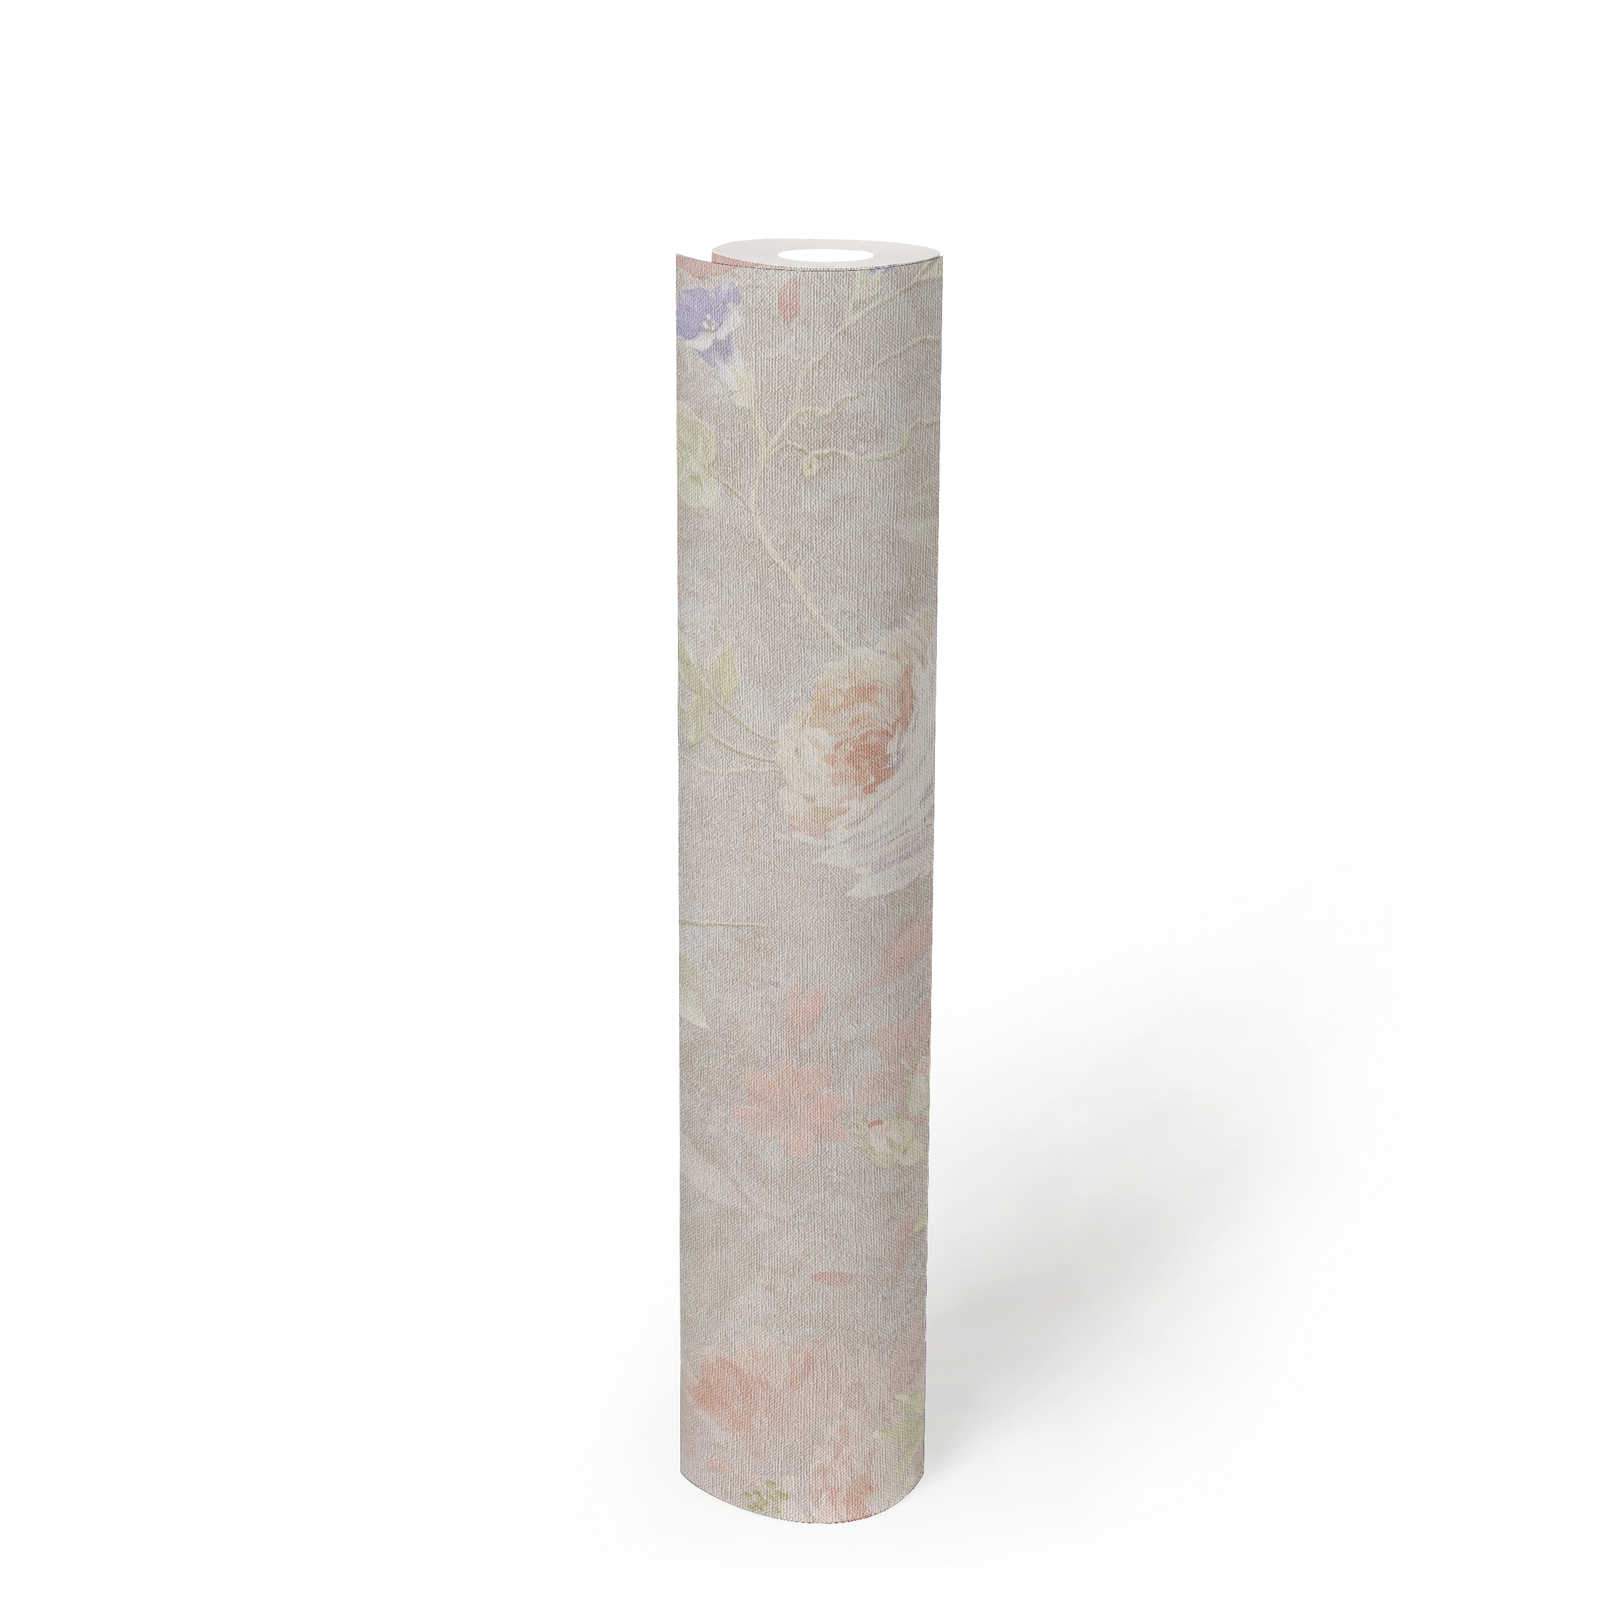             Bloemrijkbehang geschilderd patroon PVC-vrij - grijs, veelkleurig, roze
        